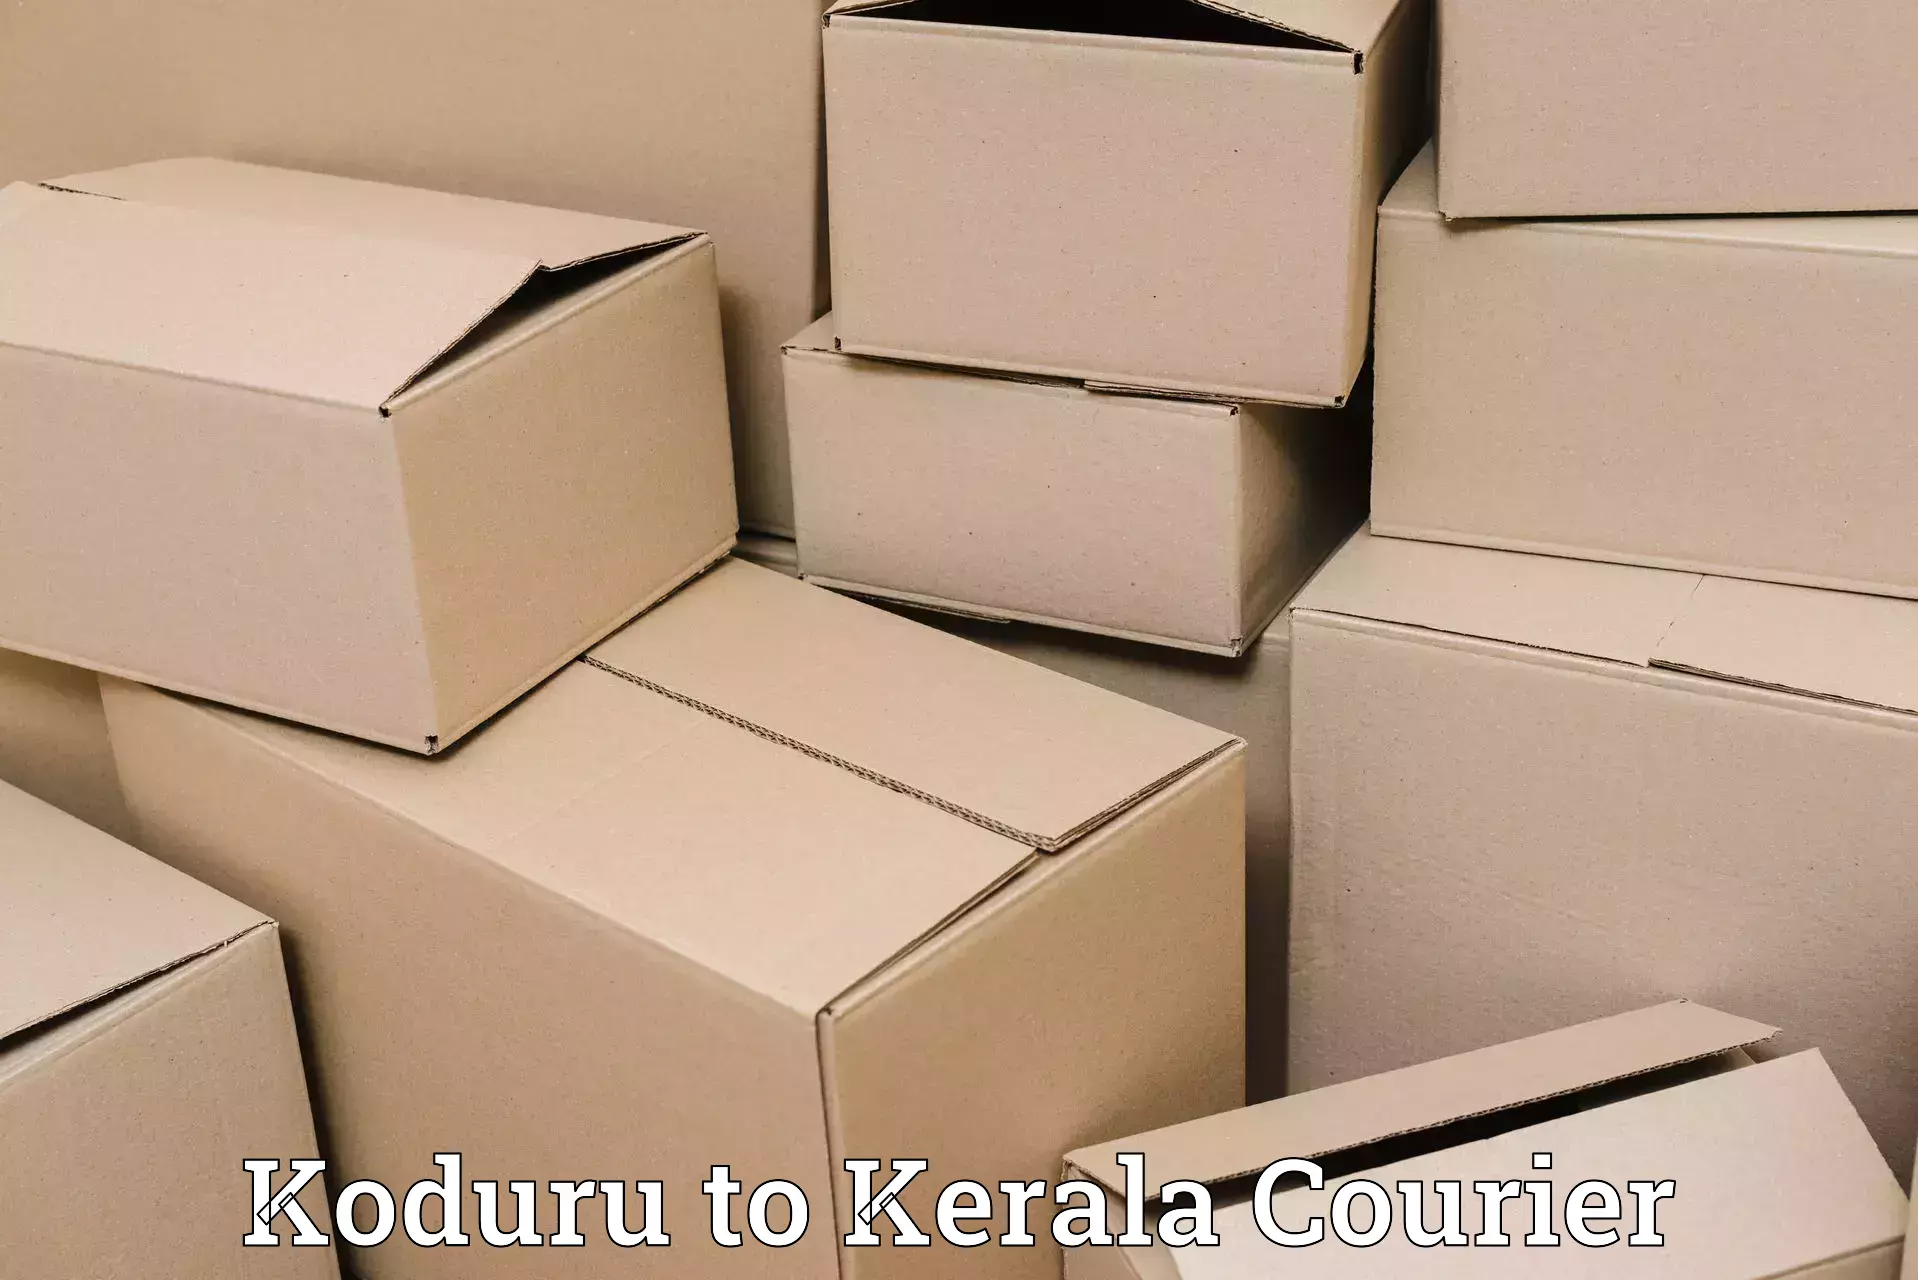 24/7 shipping services Koduru to Ernakulam